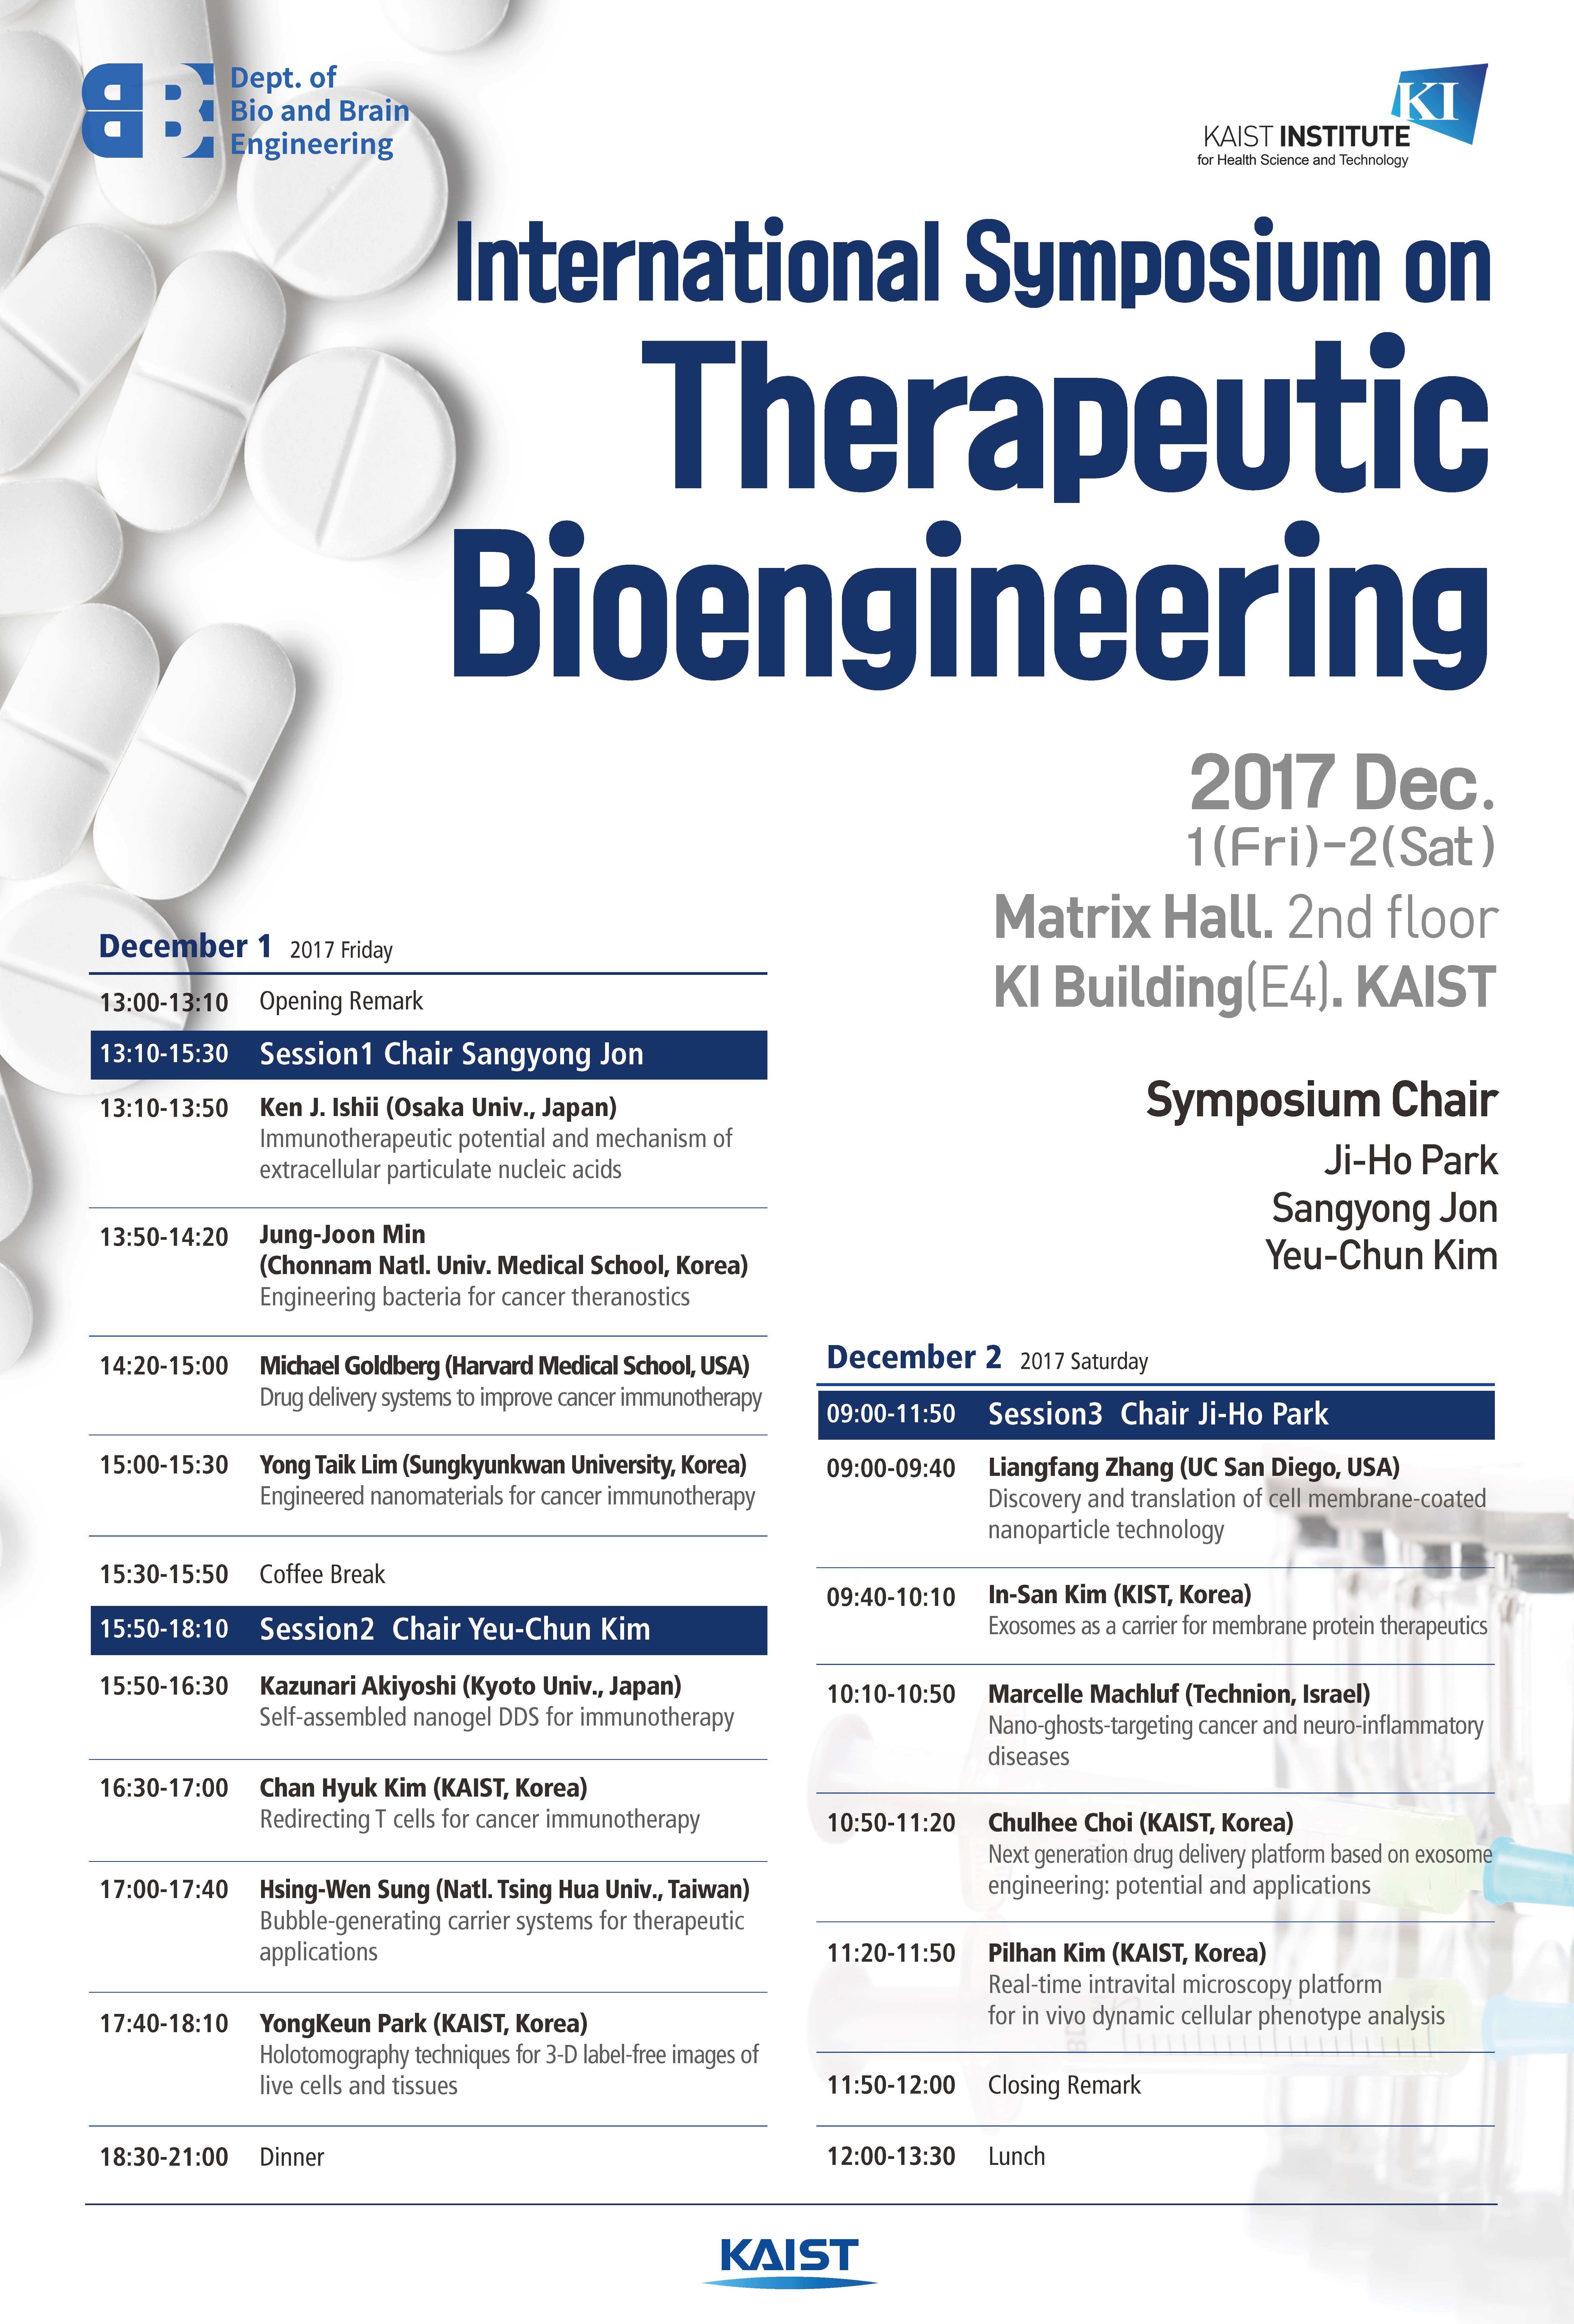 20171124_(행사게재)International Symposium on Therapeutic Bioengineering.jpg